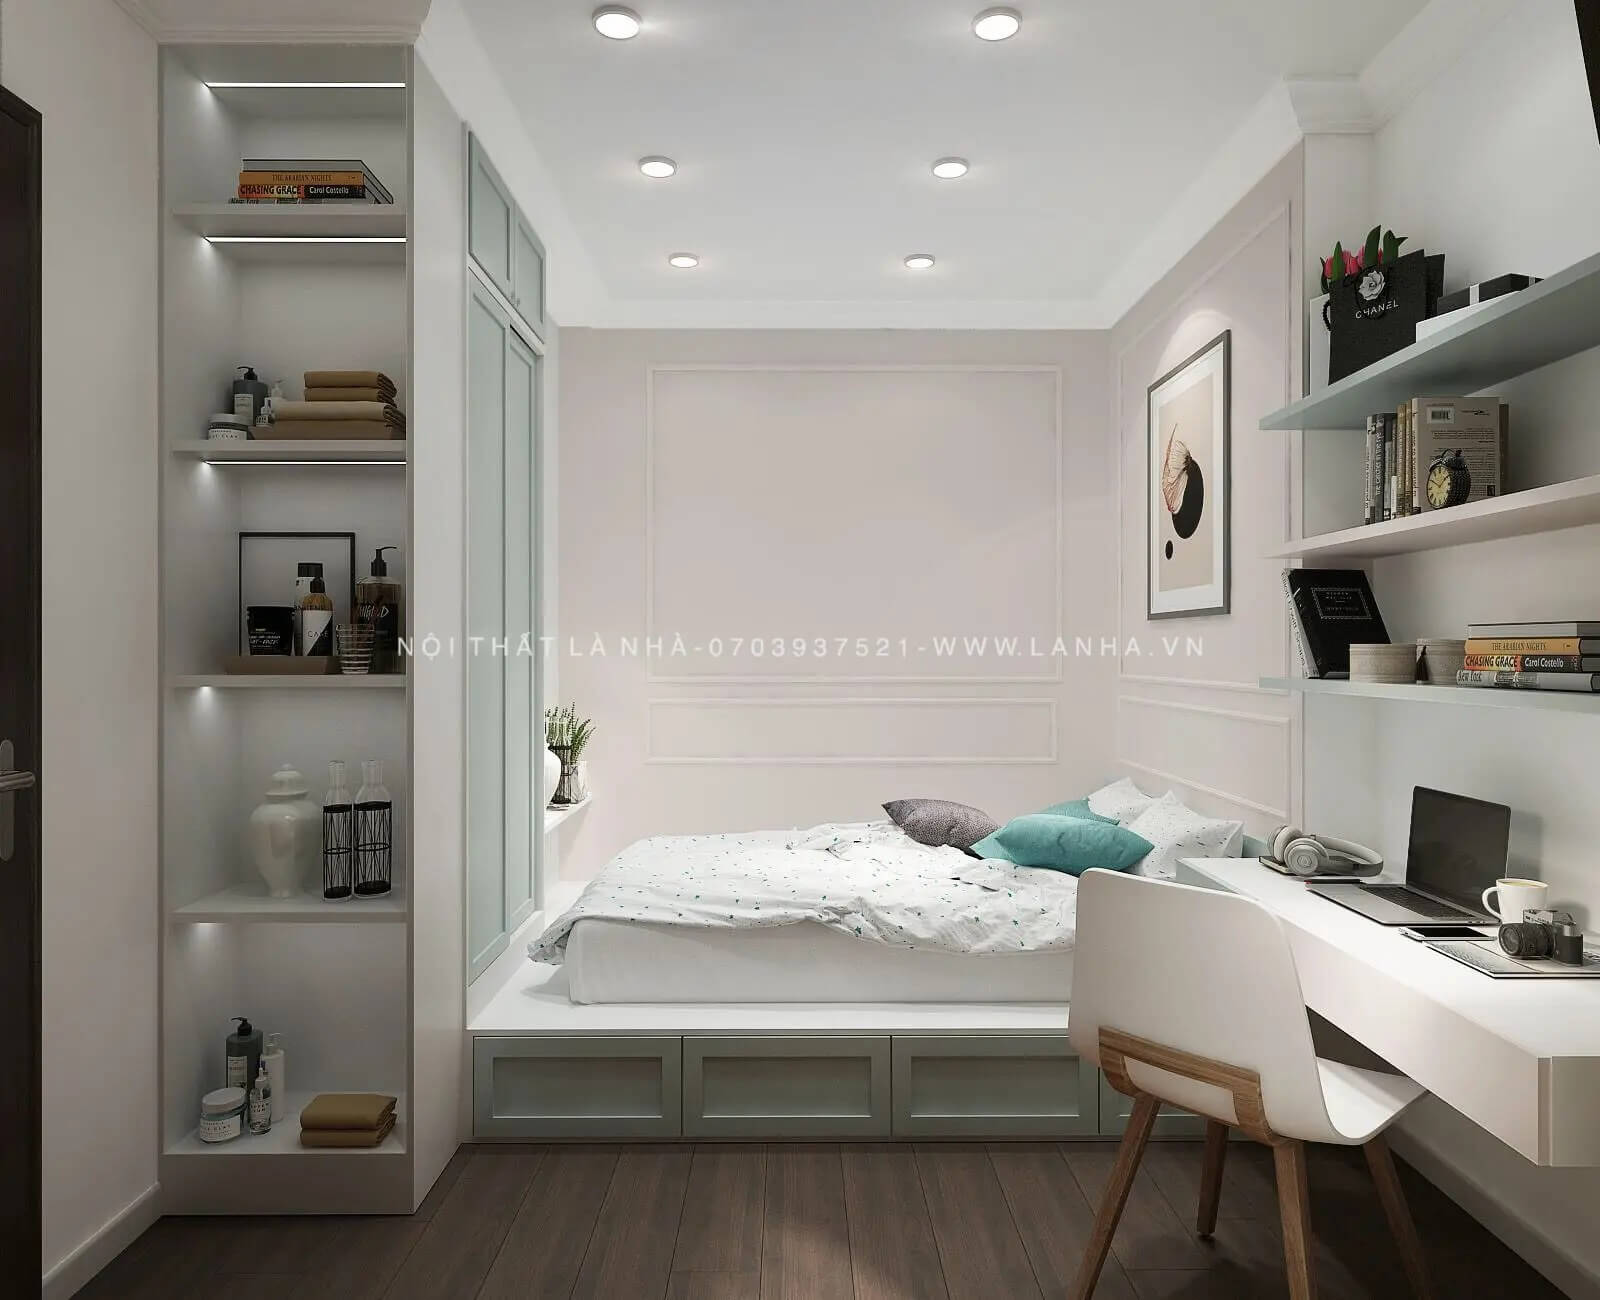 Thiết kế nội thất chung cư 2 phòng ngủ tinh tế